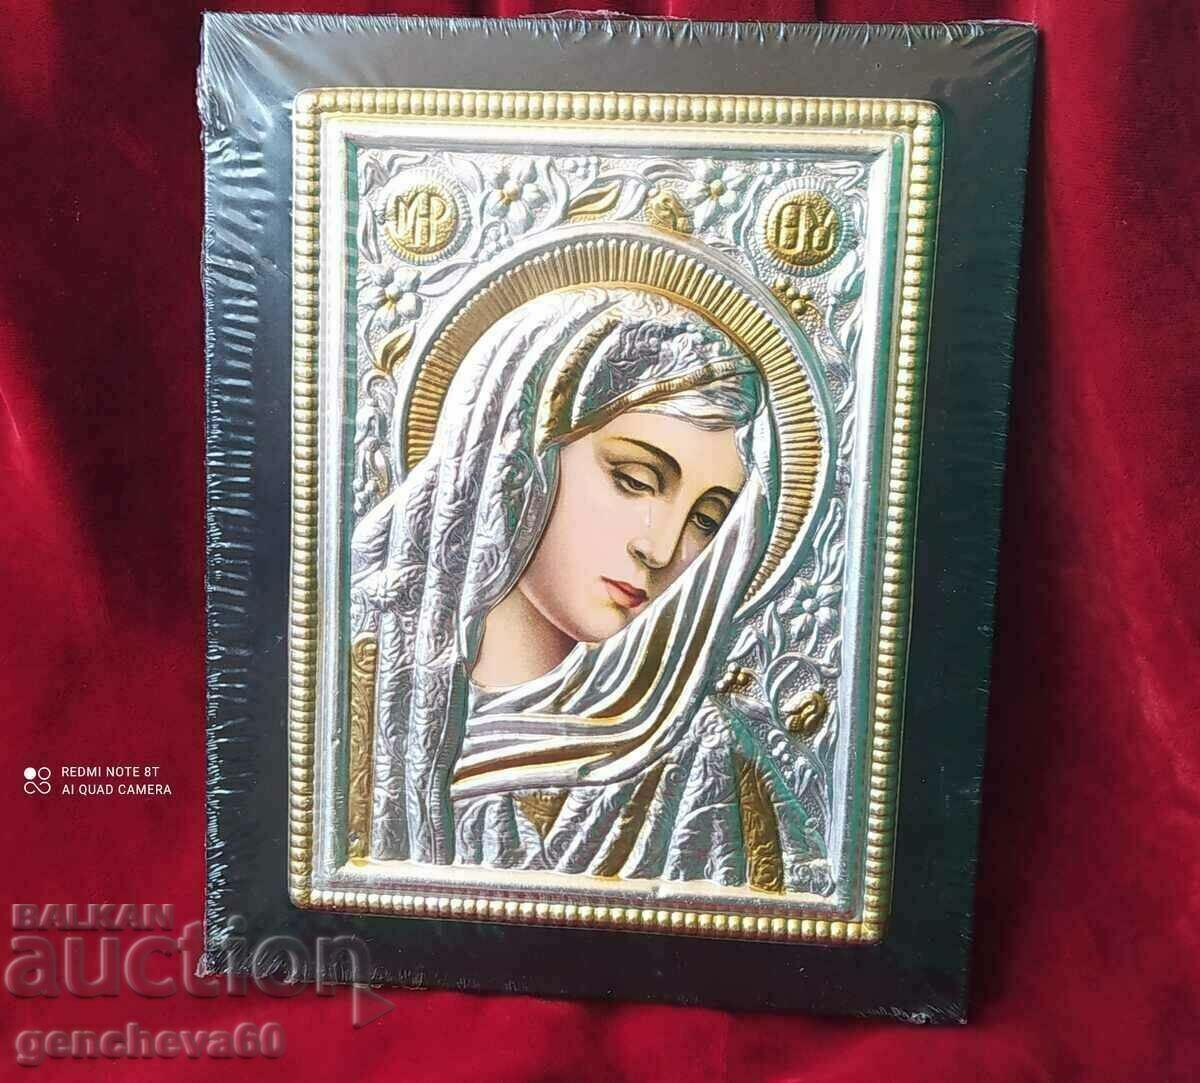 Icoana greacă a Fecioarei Maria (plângând) - certificat